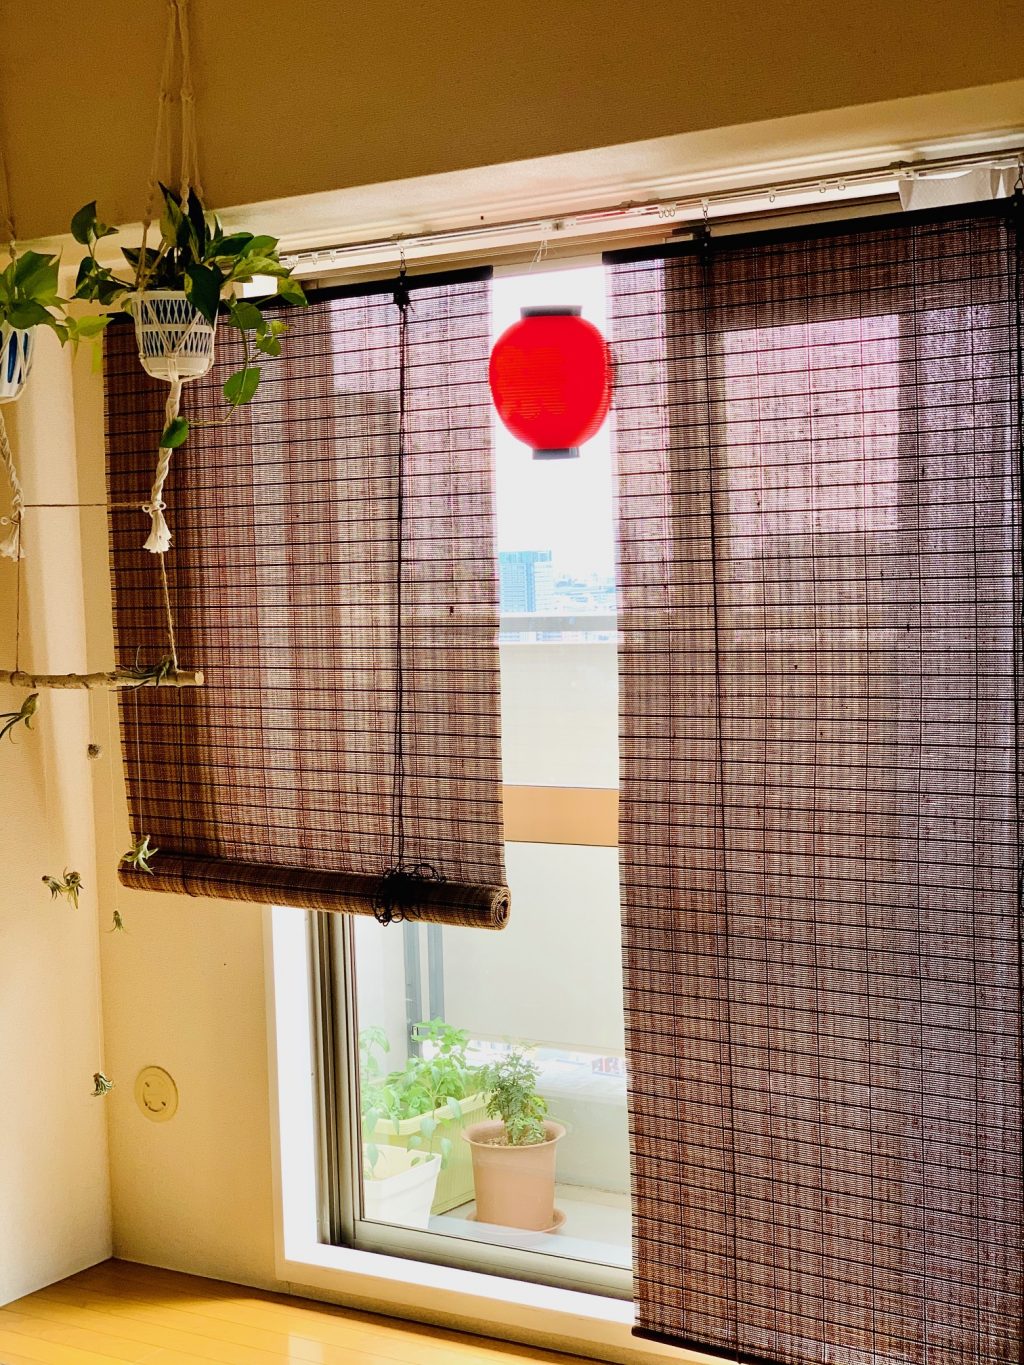 Natsu matsuri festival lantern in the window